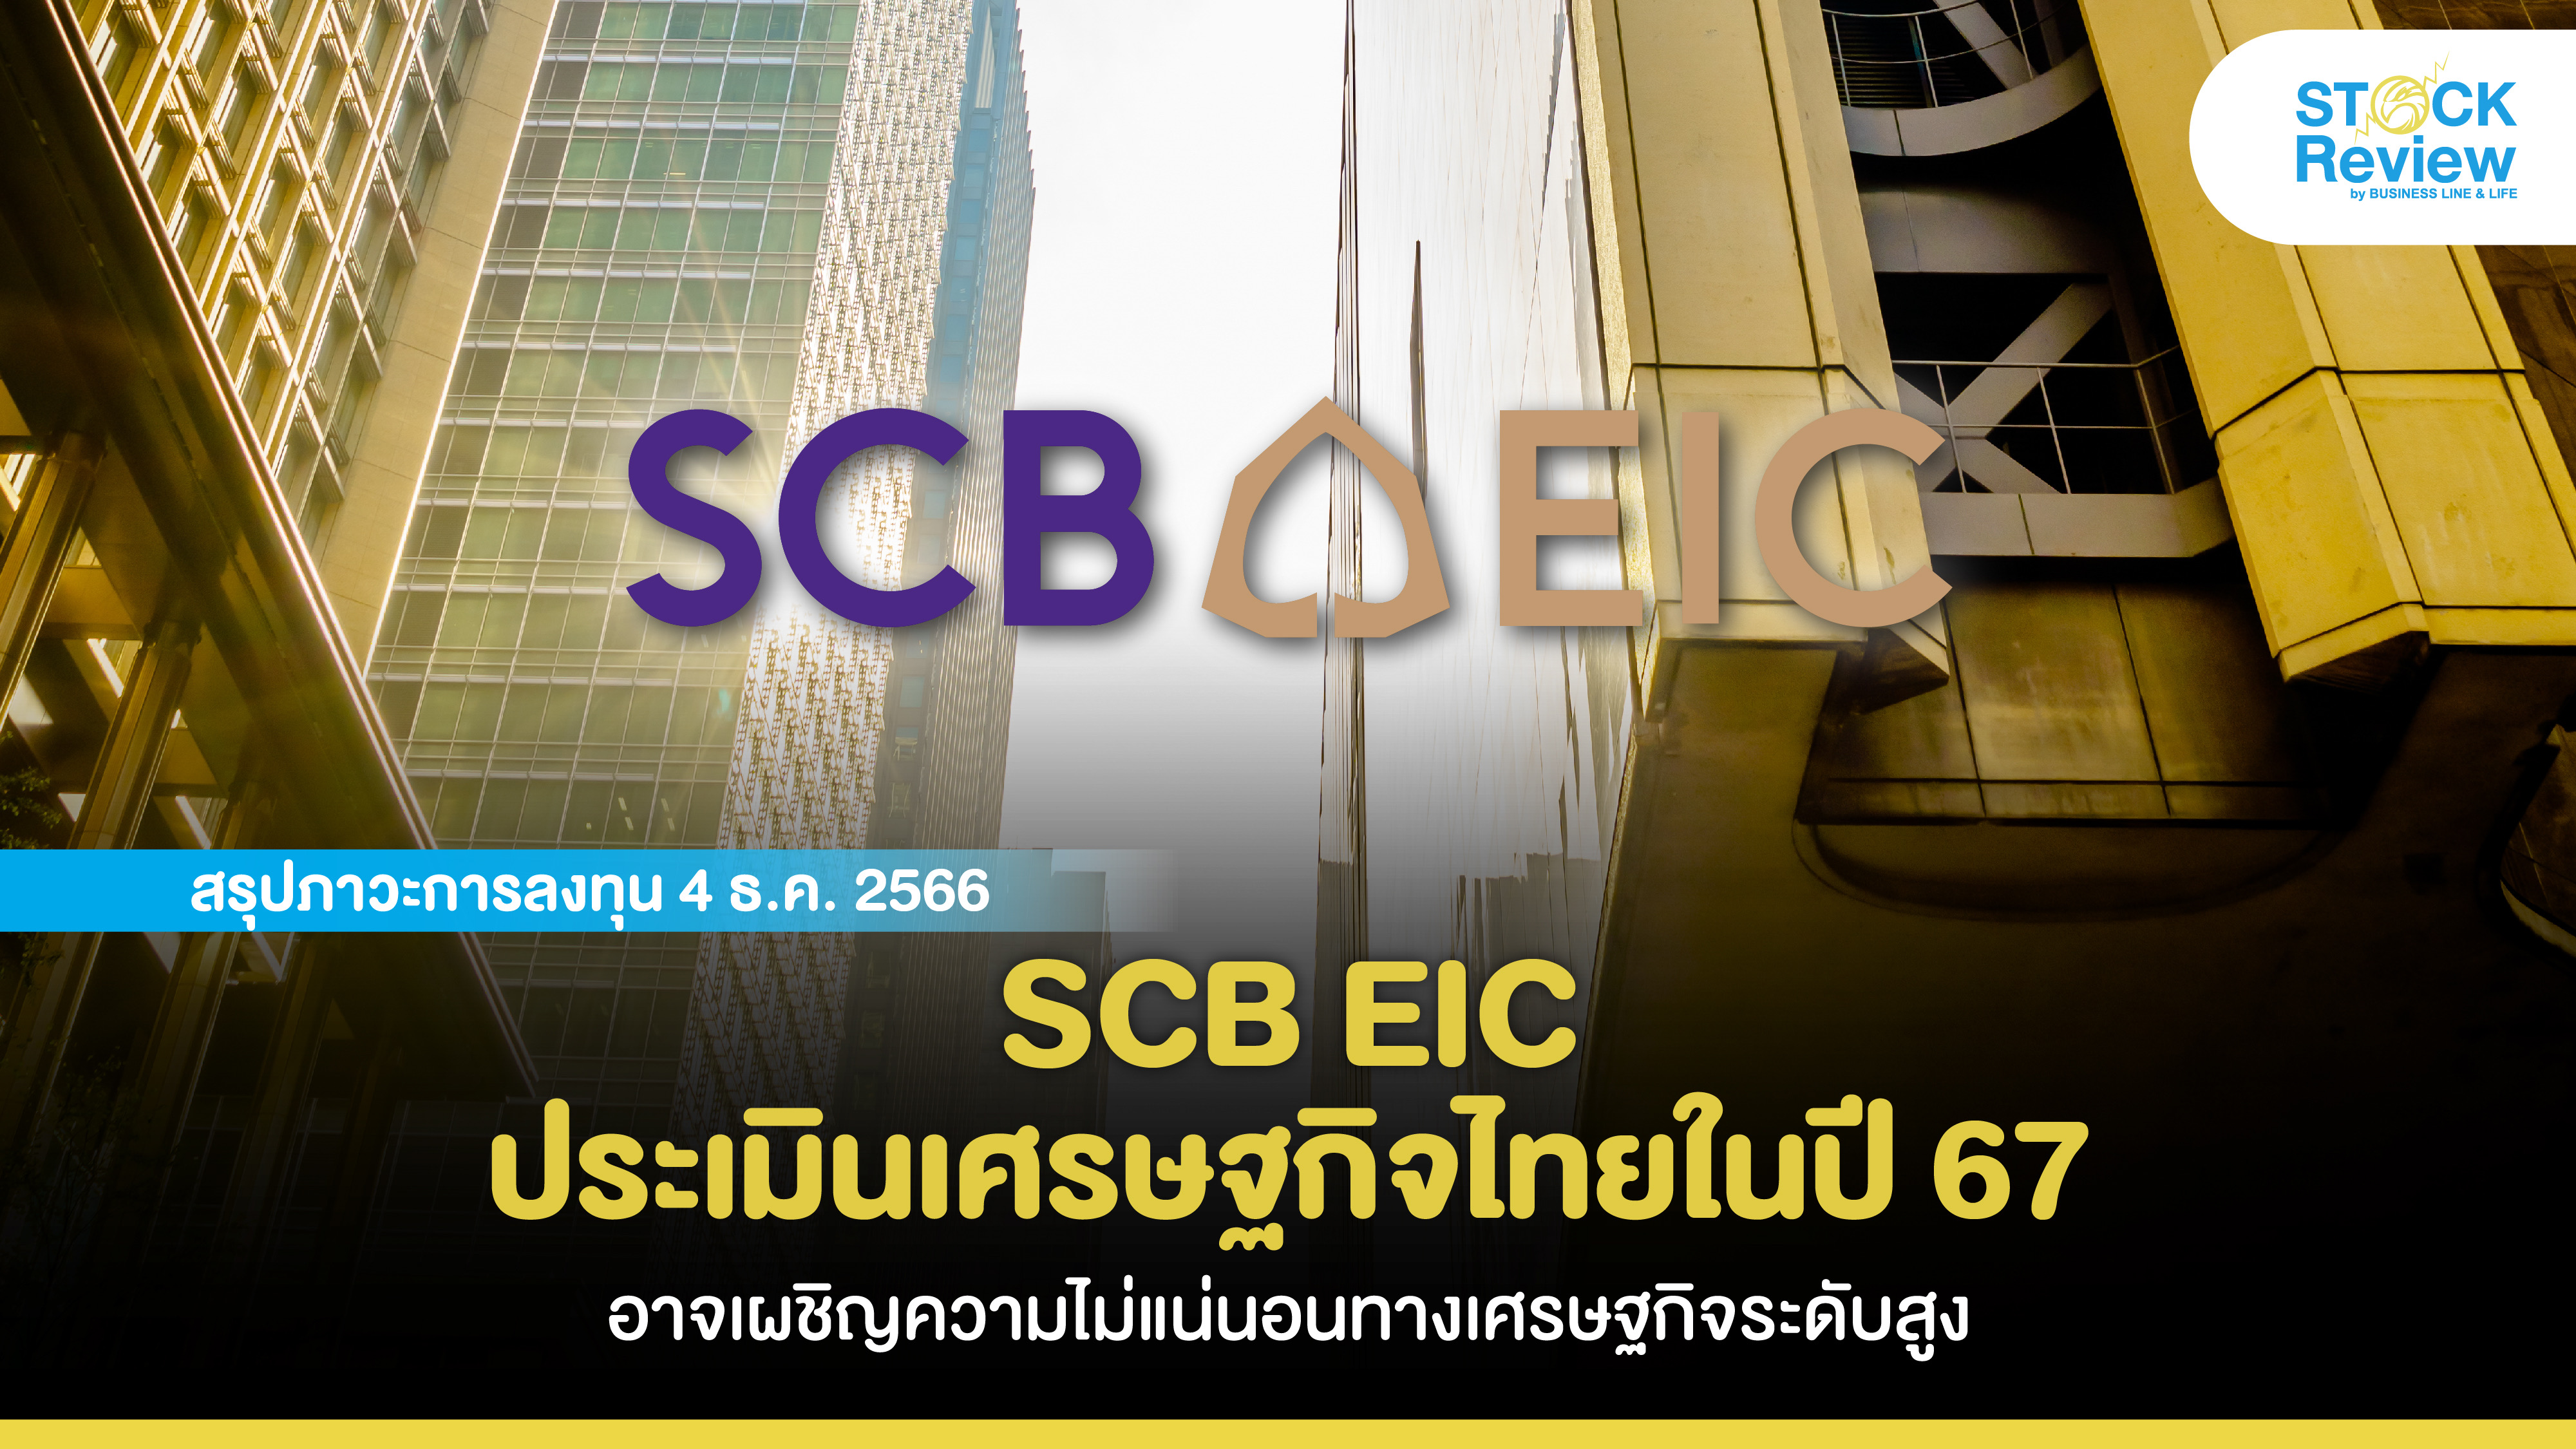 SCB EIC ประเมินเศรษฐกิจไทยในปี 67 อาจเผชิญความไม่แน่นอนทางเศรษฐกิจระดับสูง